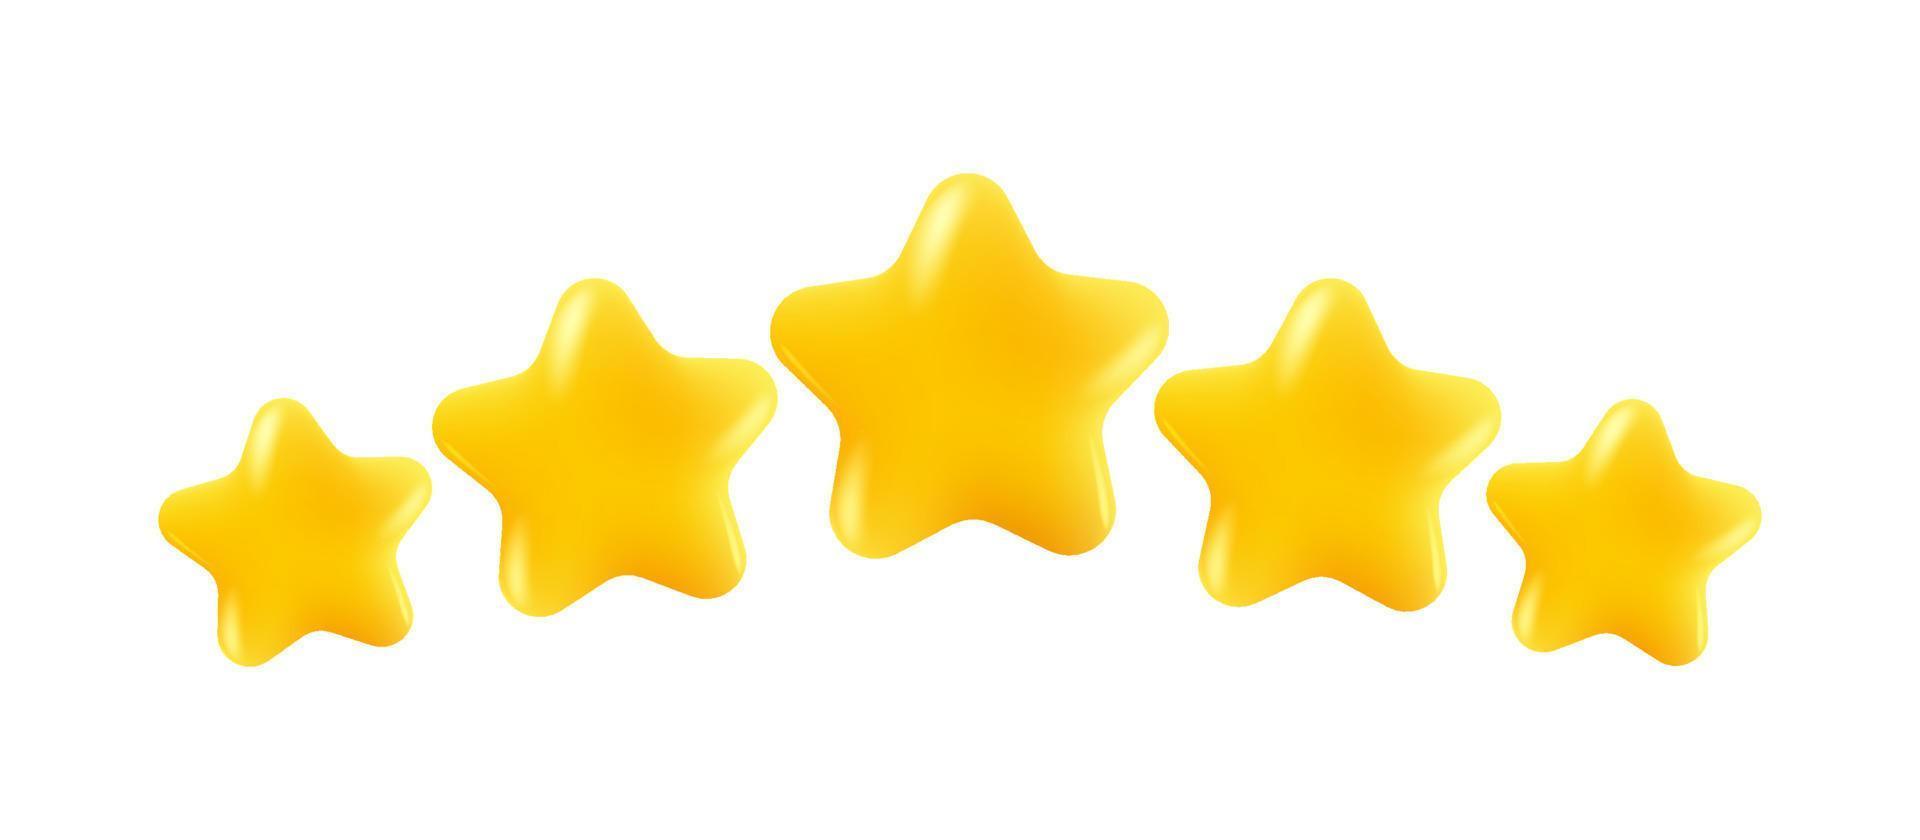 icone vettoriali di cinque colori lucidi stelle gialle. risultati per giochi o feedback sulla valutazione dei clienti del sito web.